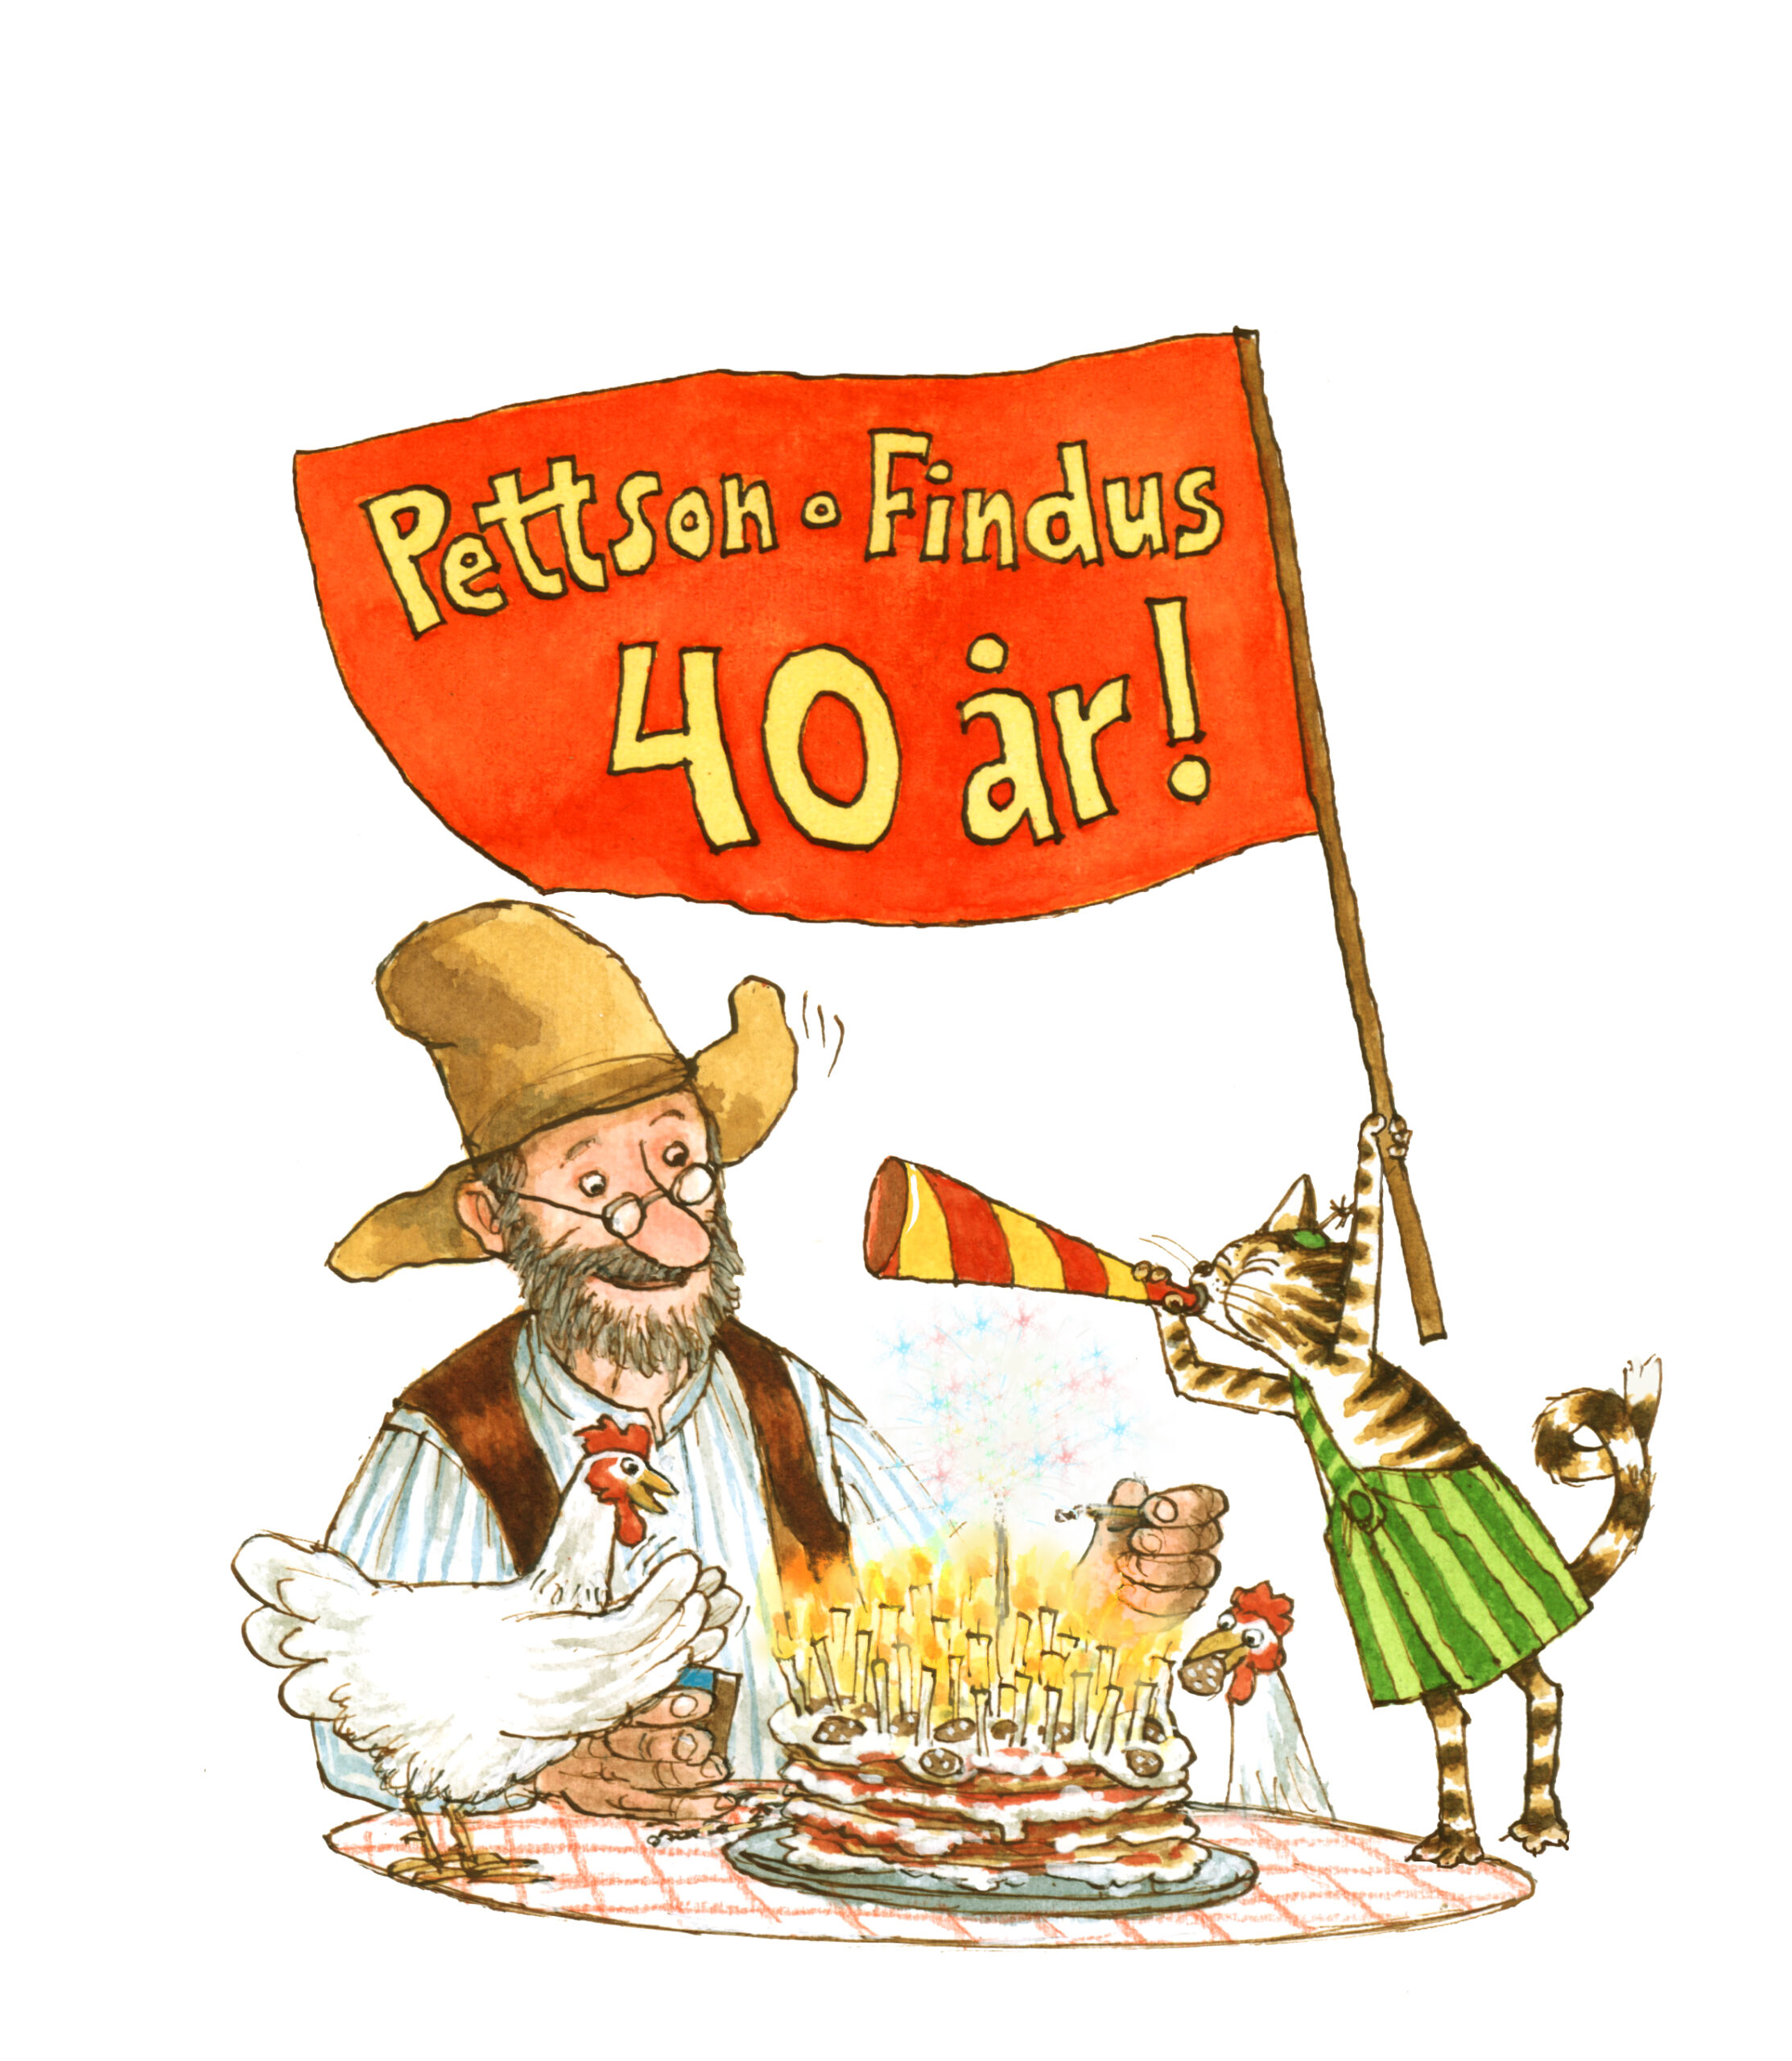 Tecknad bild på Pettson, Findus, två hönor och en tårta. Findus håller upp en flagga med texten "Pettson och Findus 40 år!"